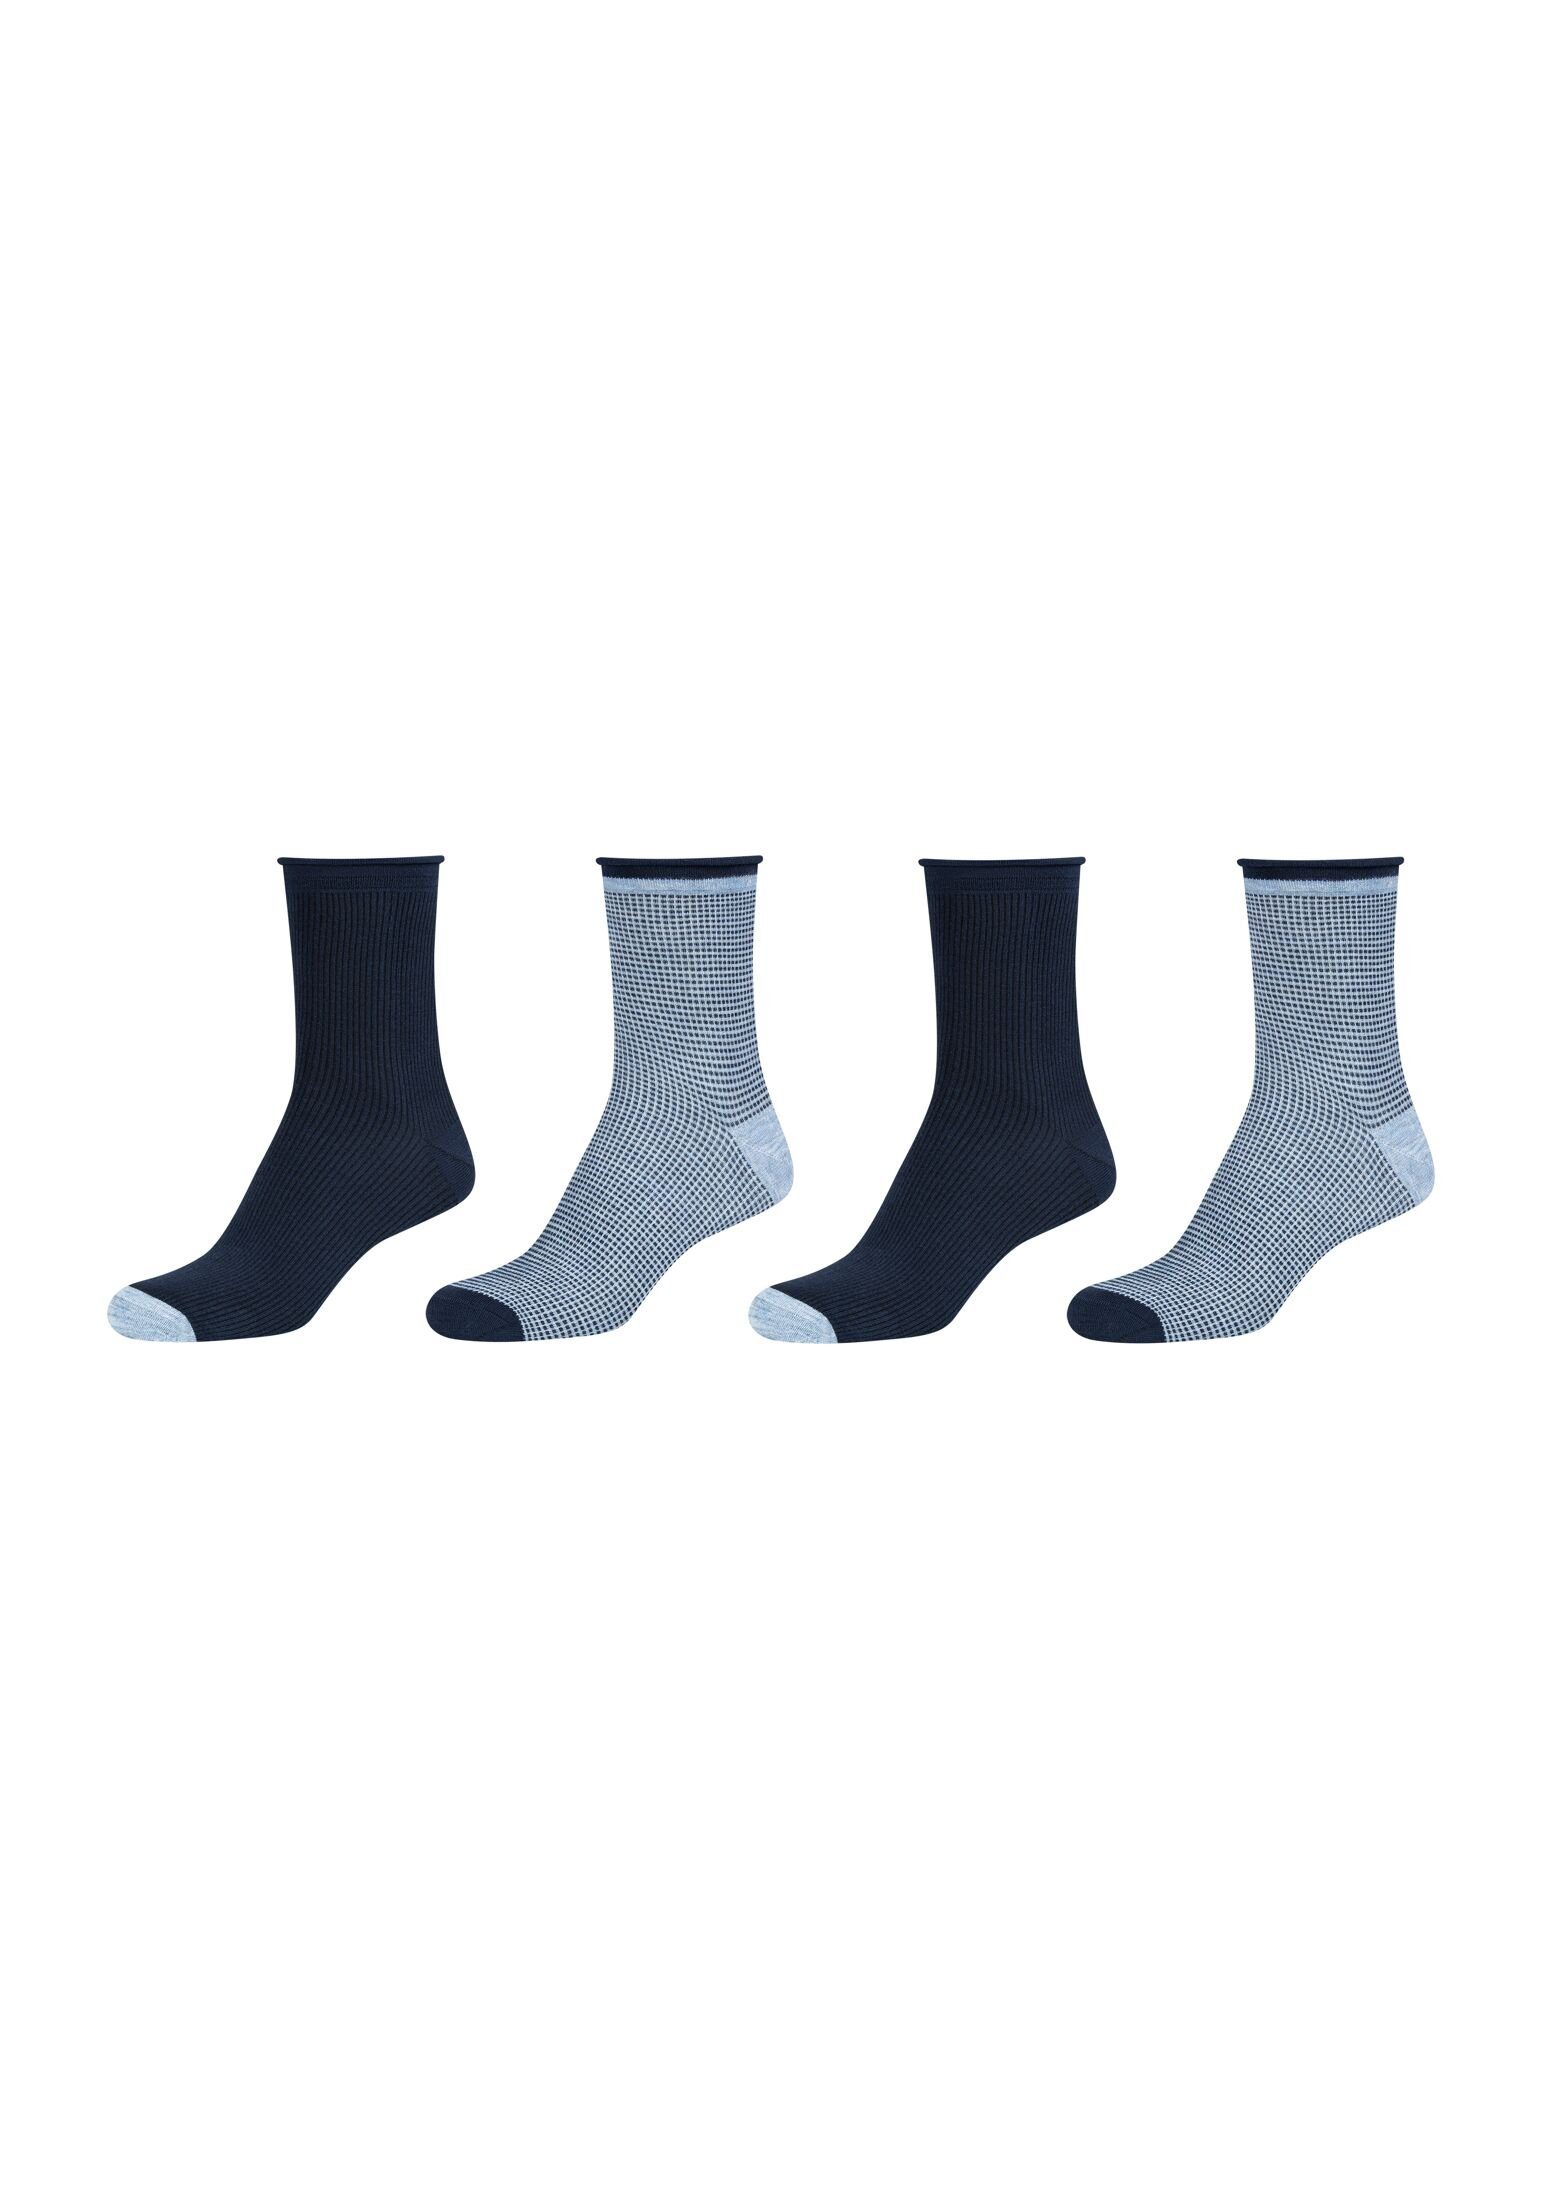 Rollbündchen Socken ohne Tragekomfort: Gummidruck Socken Camano Hoher 4er Pack, weiches